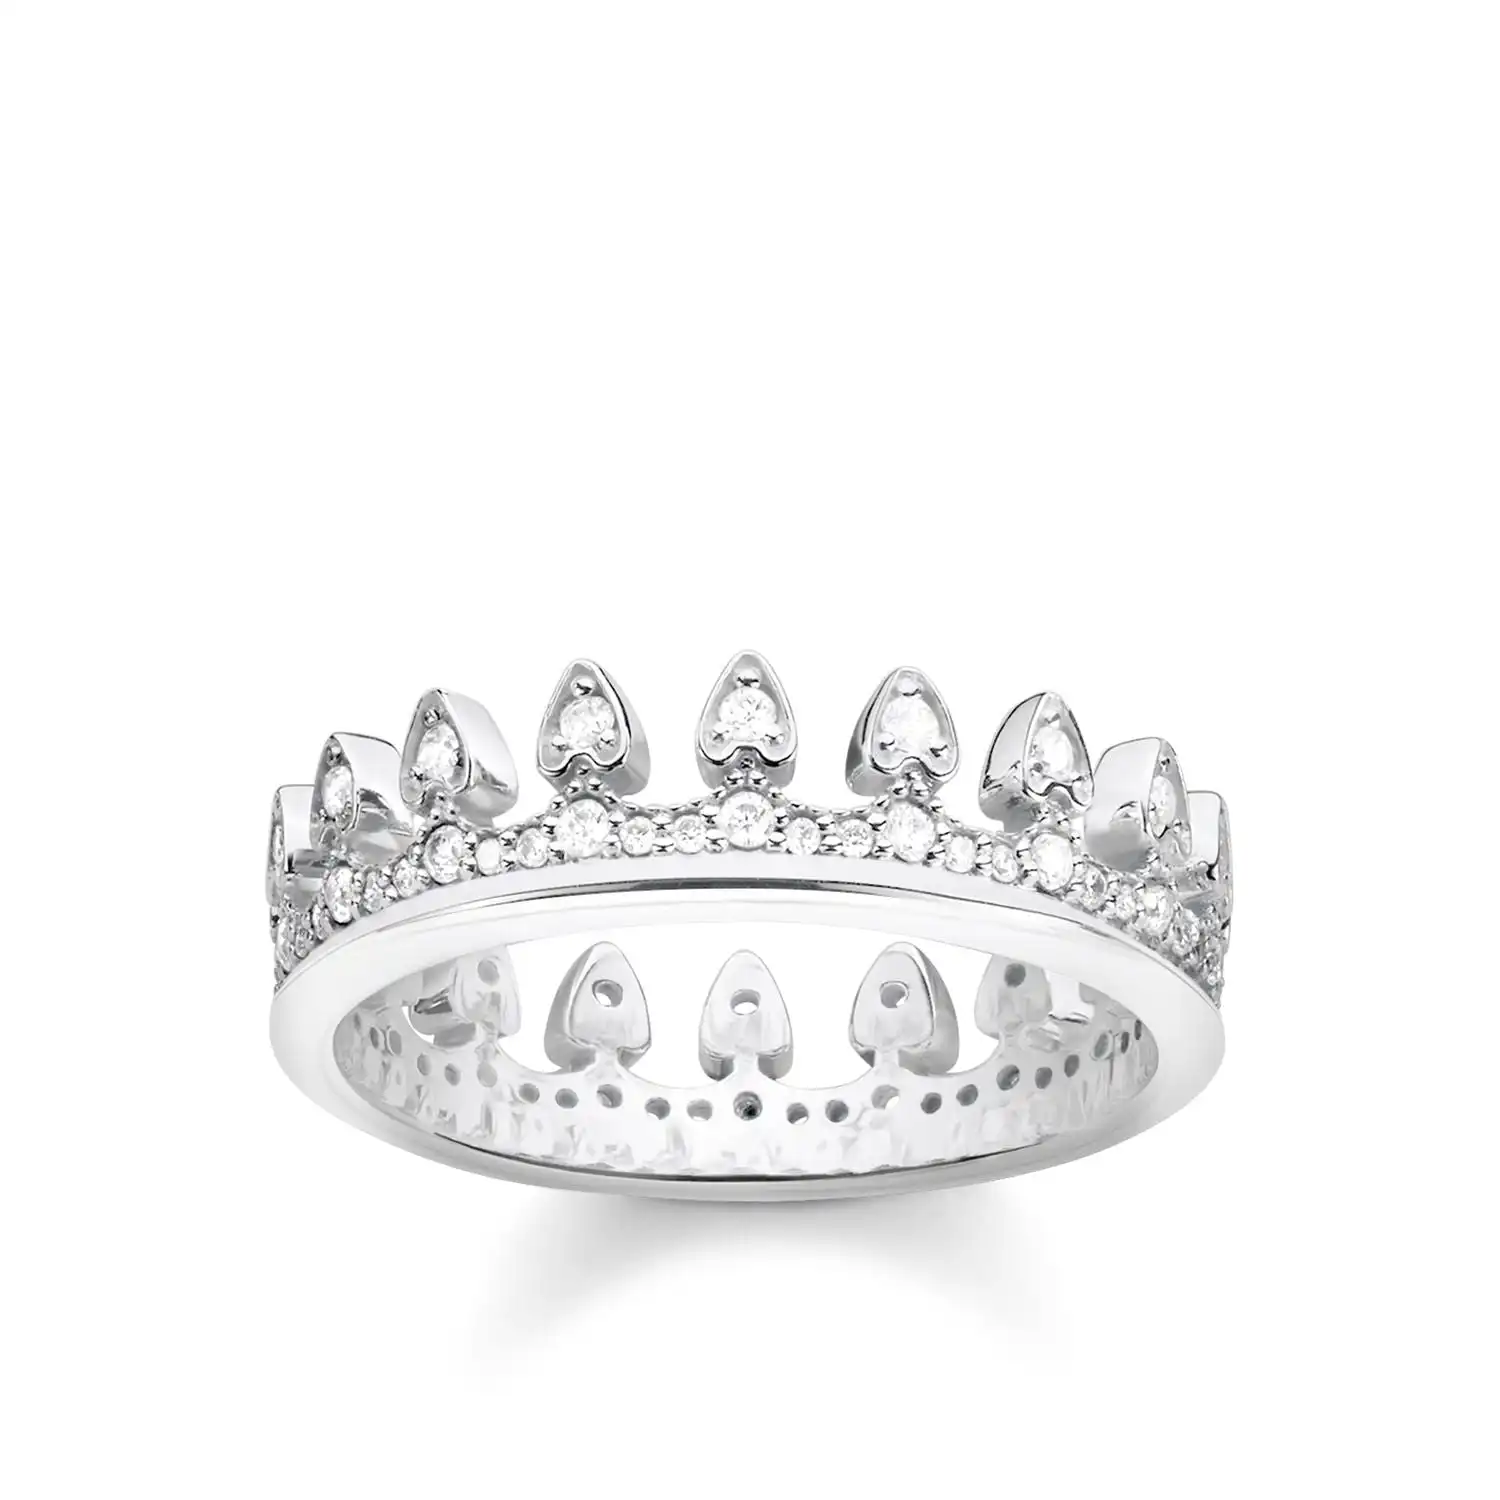 Thomas Sabo Ring "Crown"